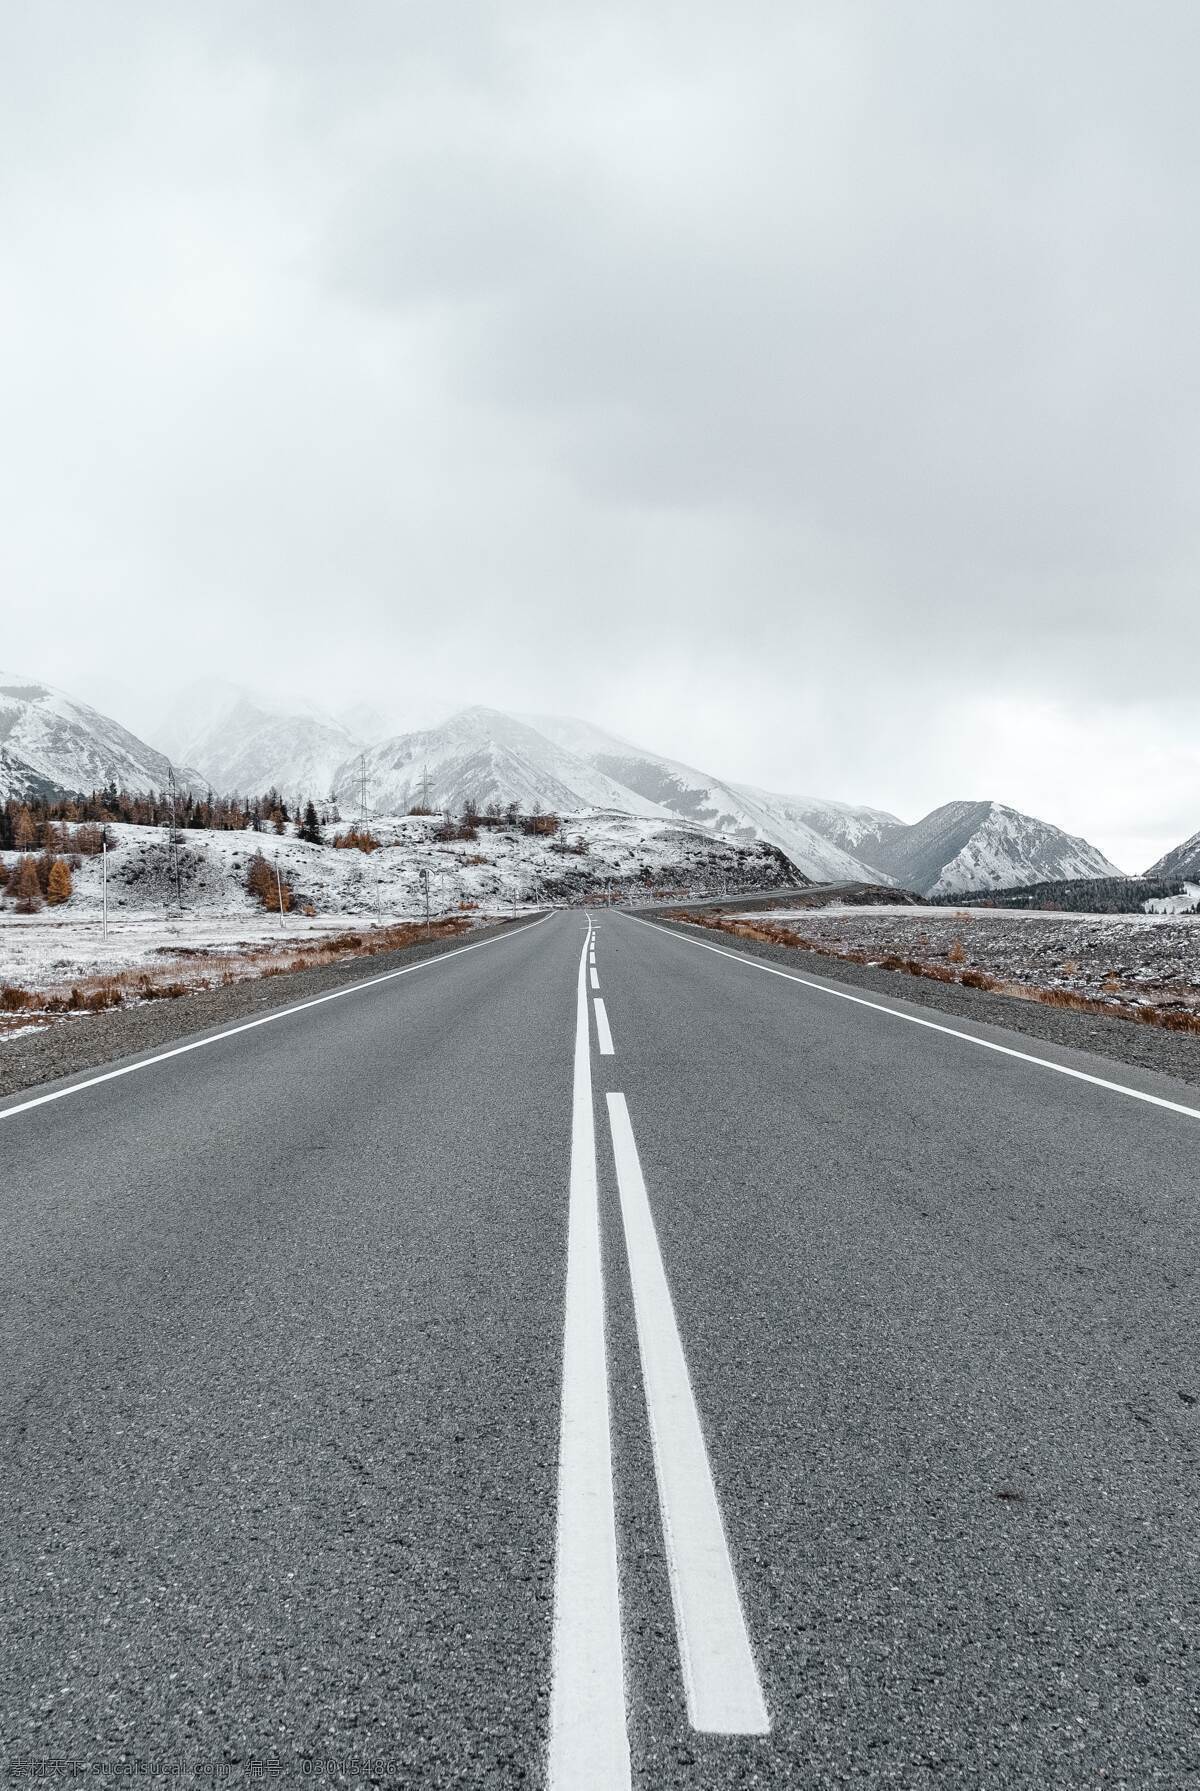 高原 雪山 上 高速路 透视 旅游 旅行 自驾游 高速公路 国道 下雪 雪 阴天 自然景观 自然风景